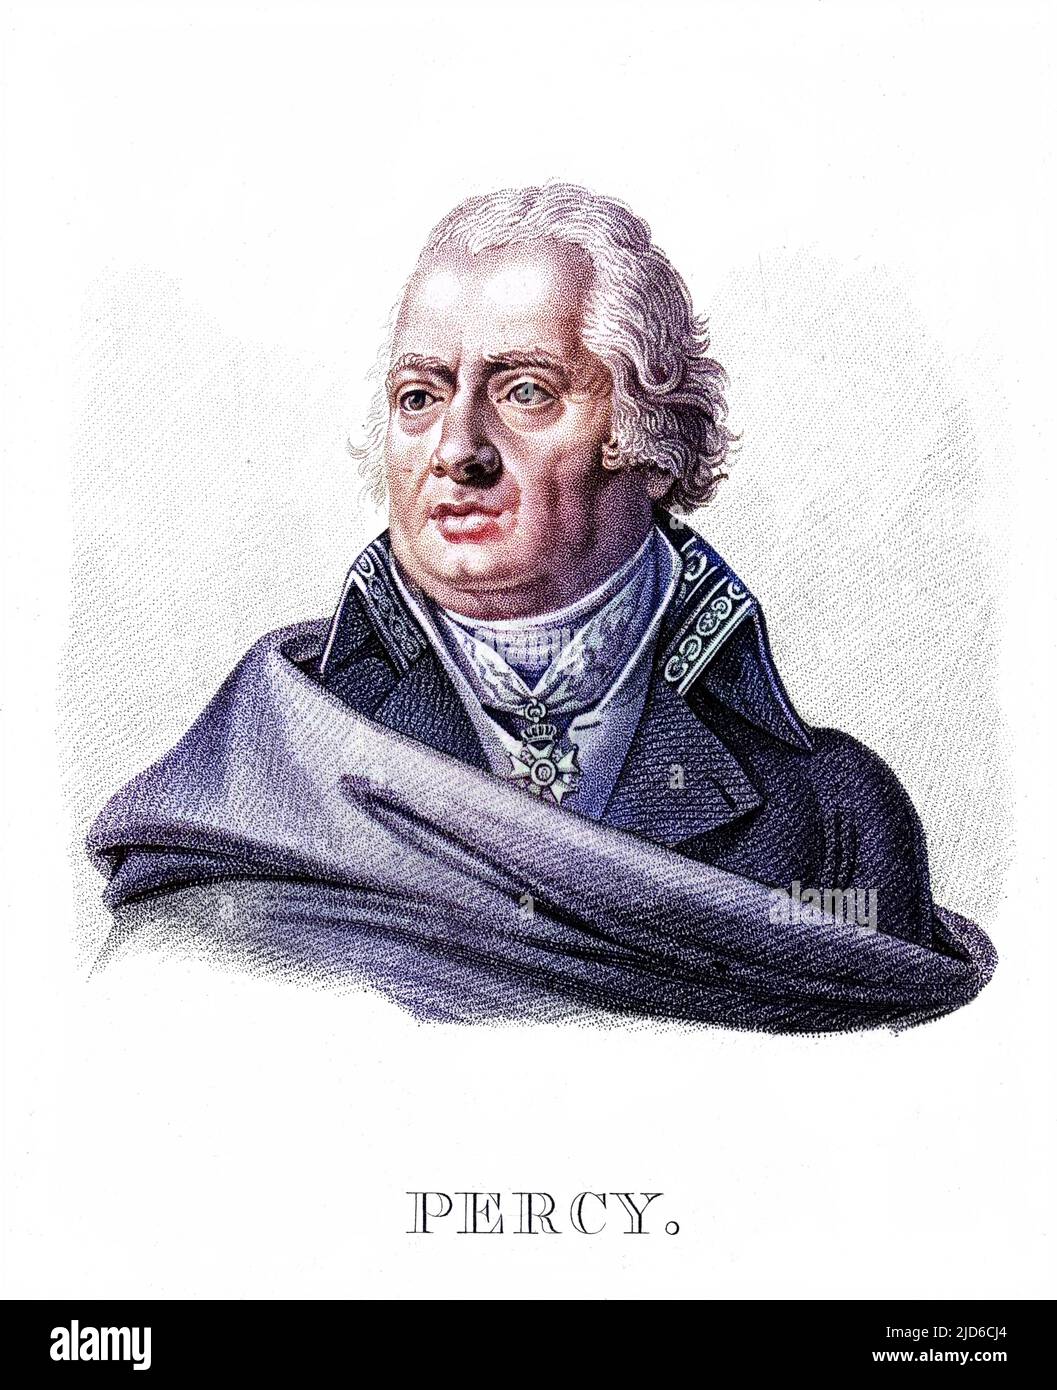 PIERRE FRANCOIS PERCY Französischer Militärchirurg Colorized Version von : 10172413 Datum: 1754 - 1825 Stockfoto